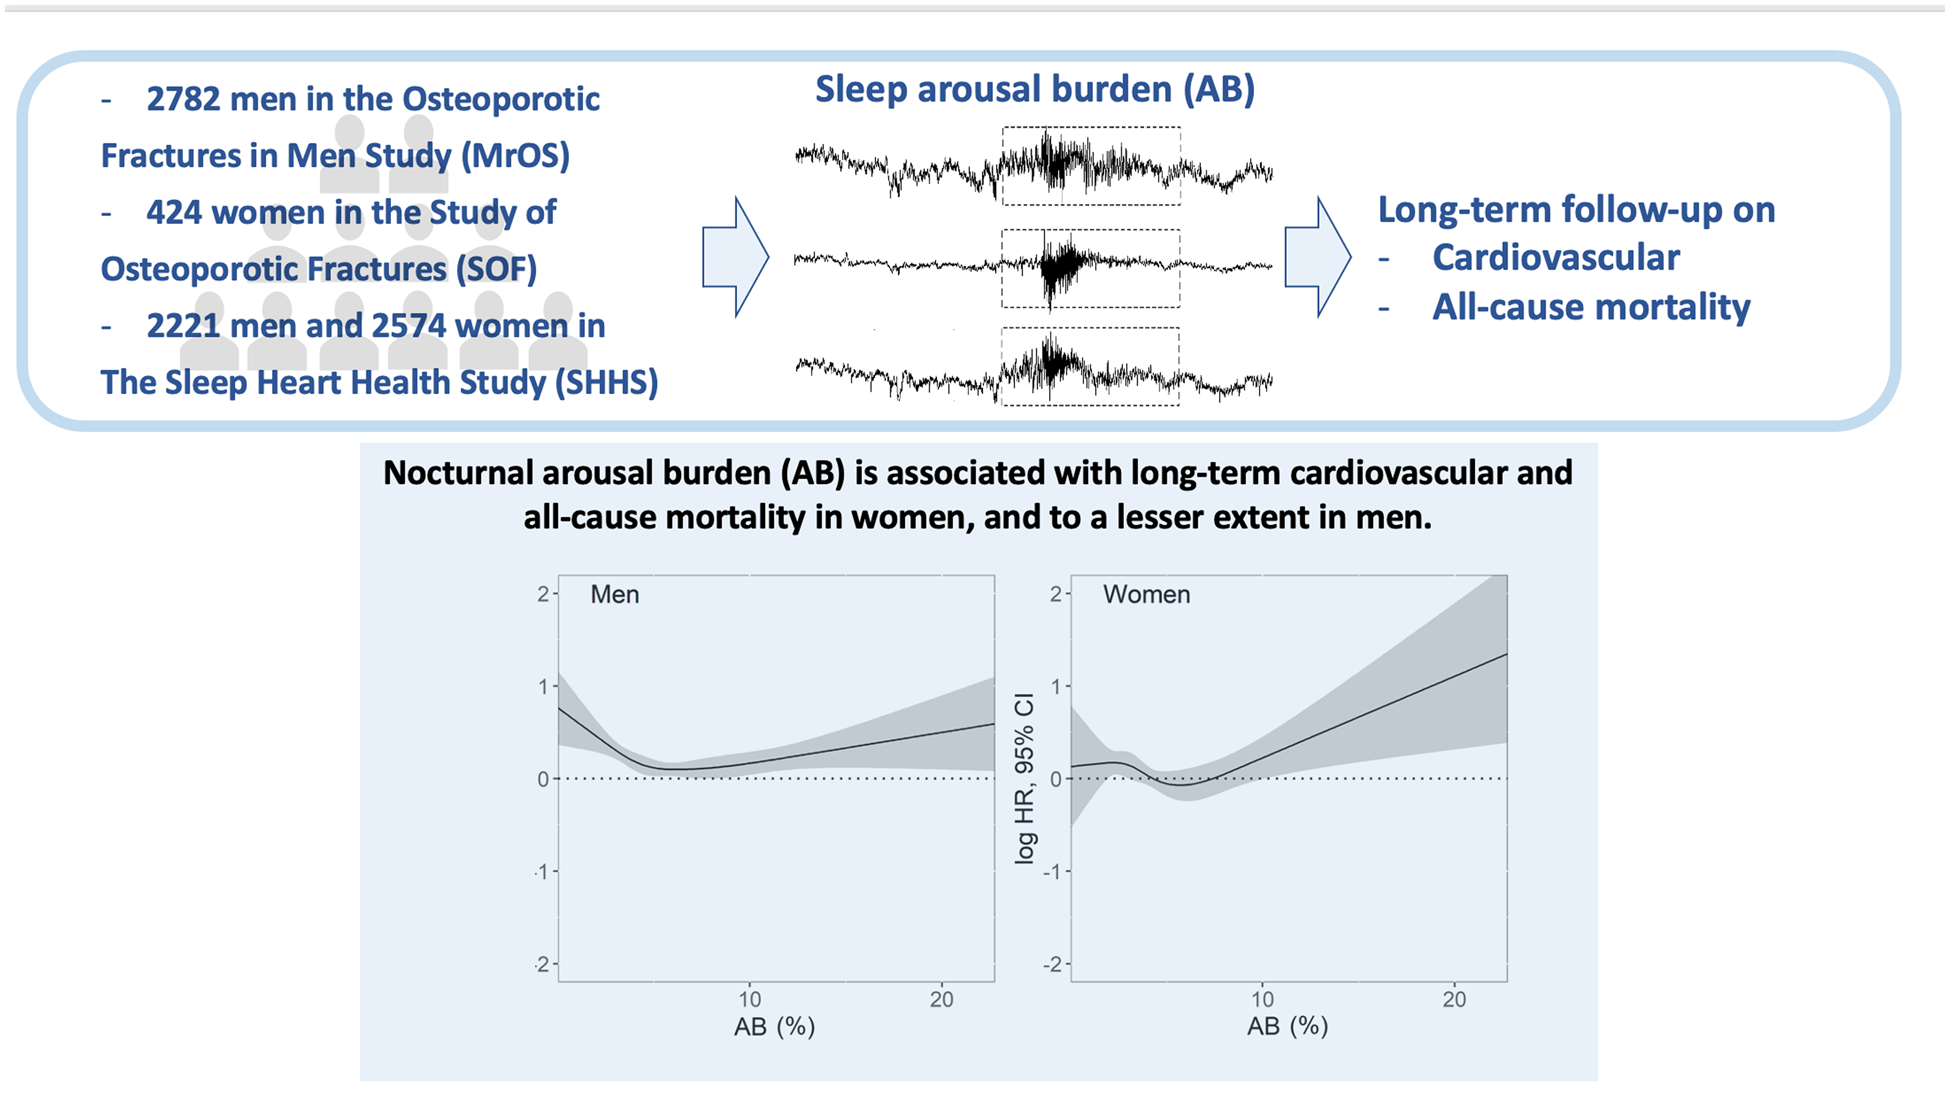 Eur Heart J：睡眠觉醒负担与长期全因和心血管疾病死亡率之间的关联